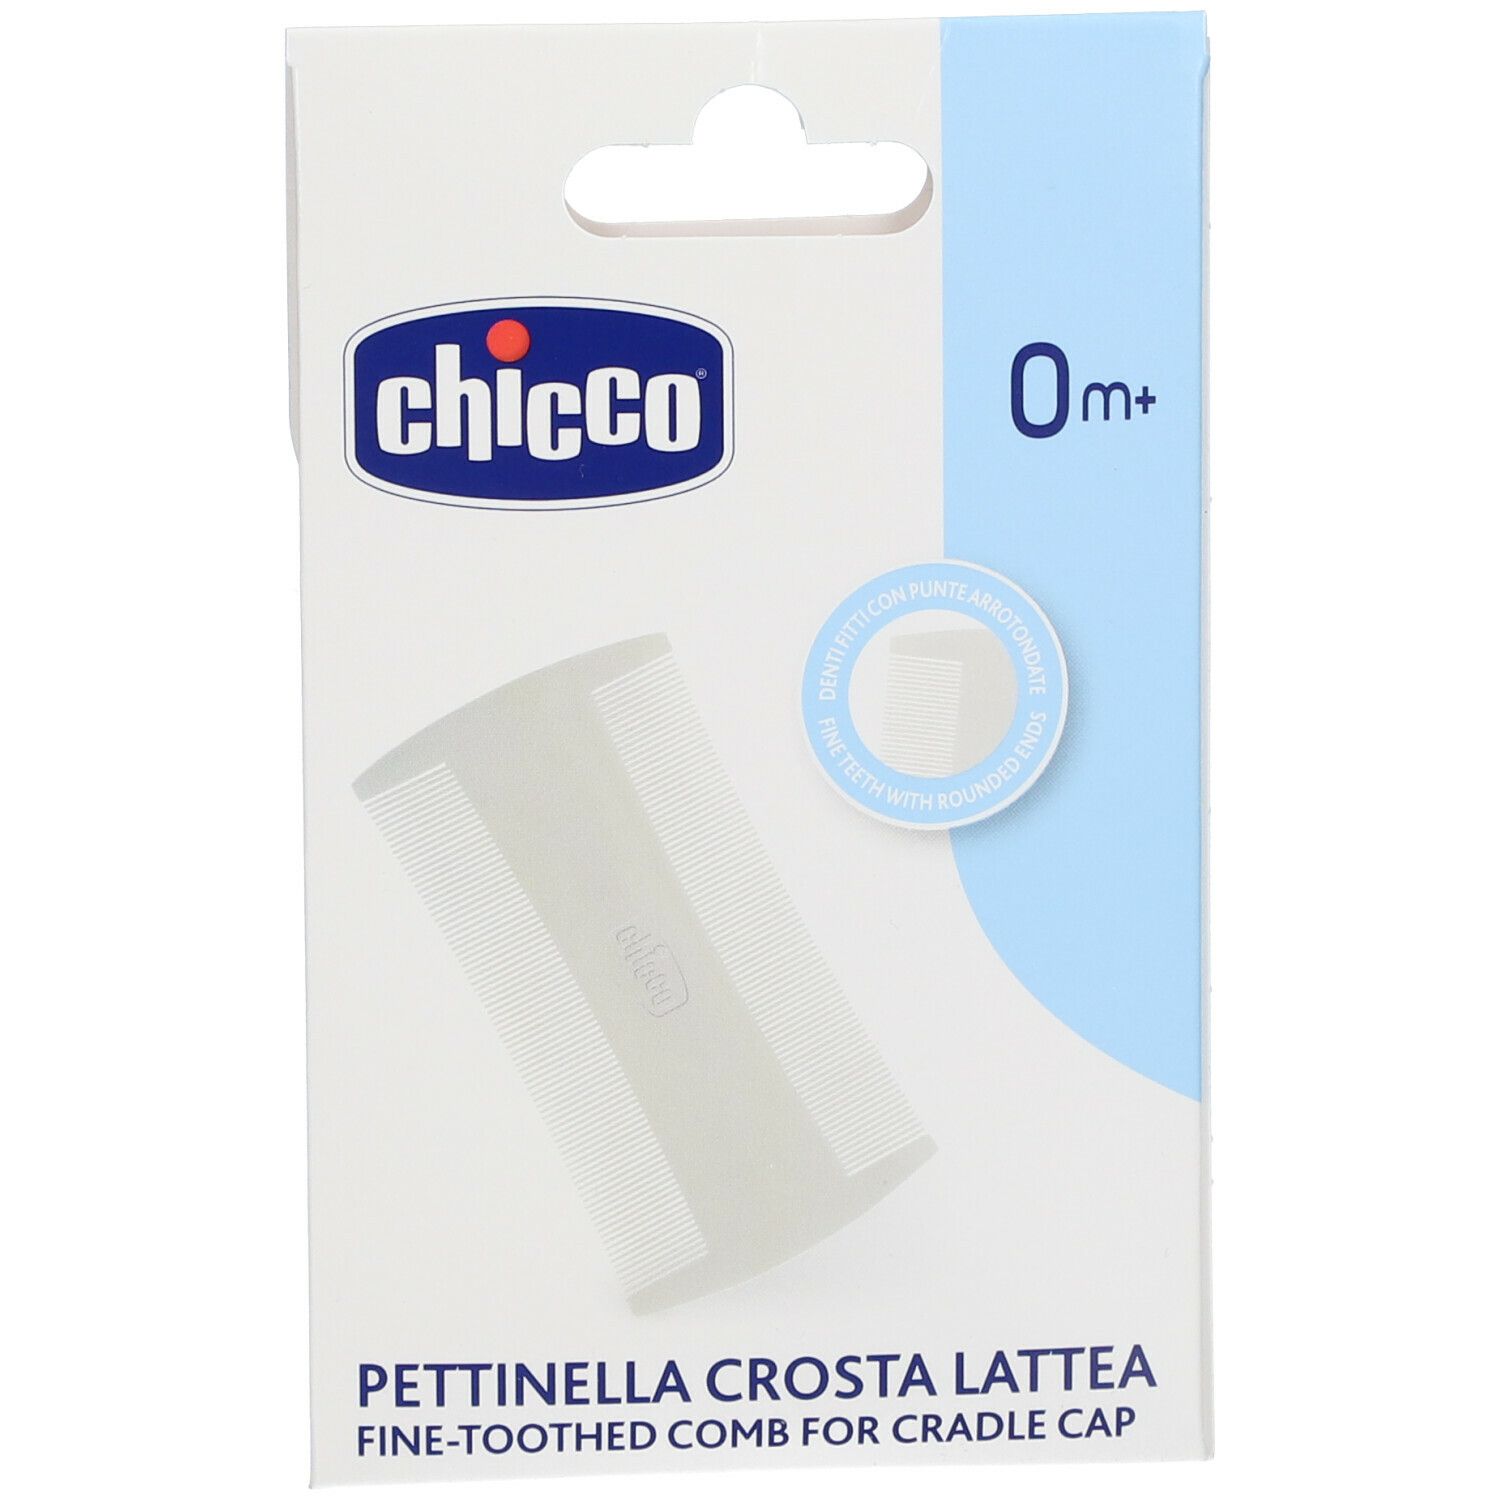 Chicco® Pettinella Crosta Lattea 0m+